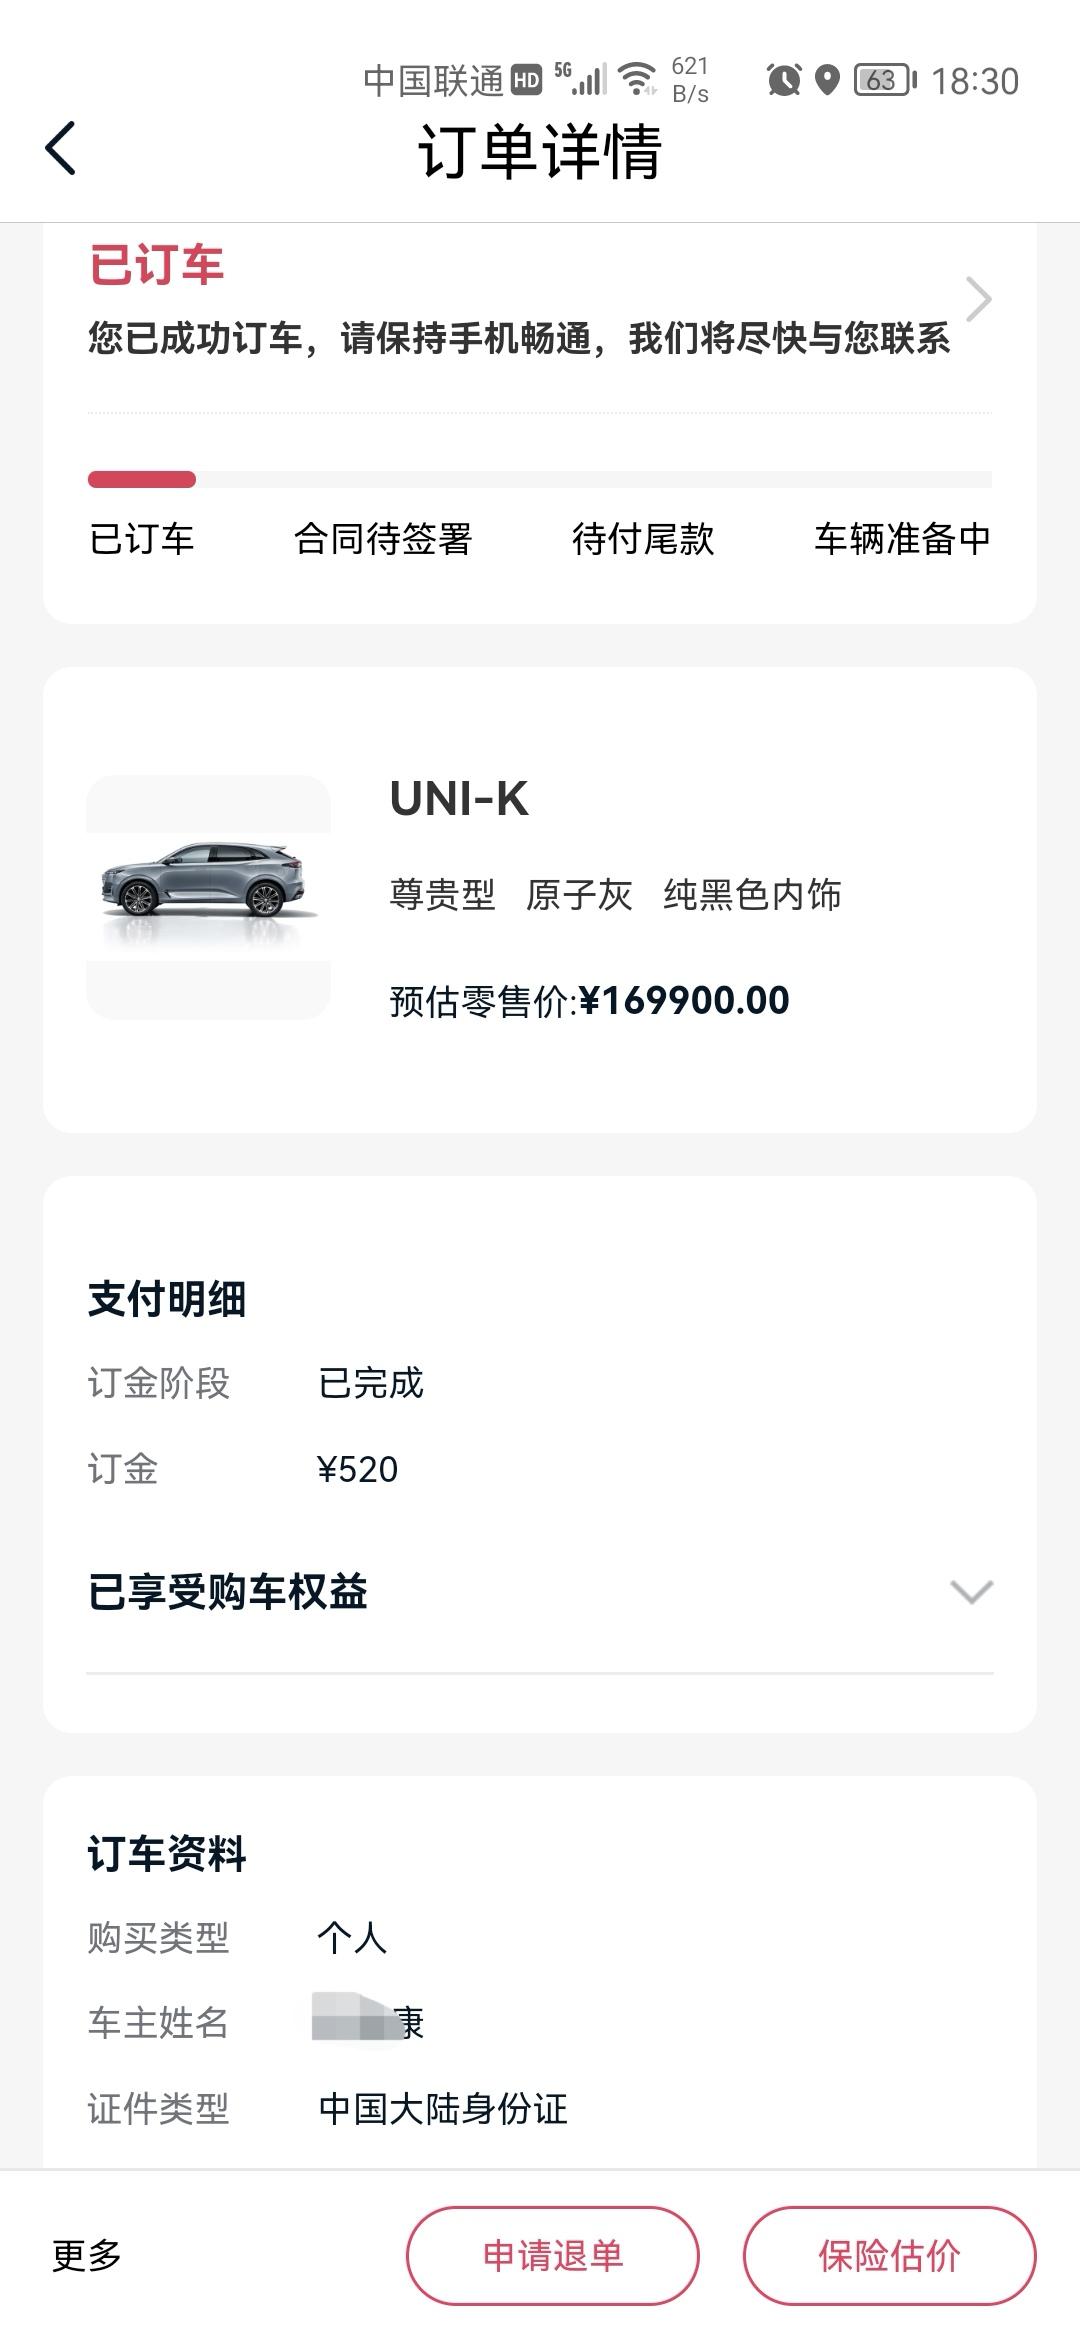 长安UNI-K 7月21日订的什么时候可以拿车吗